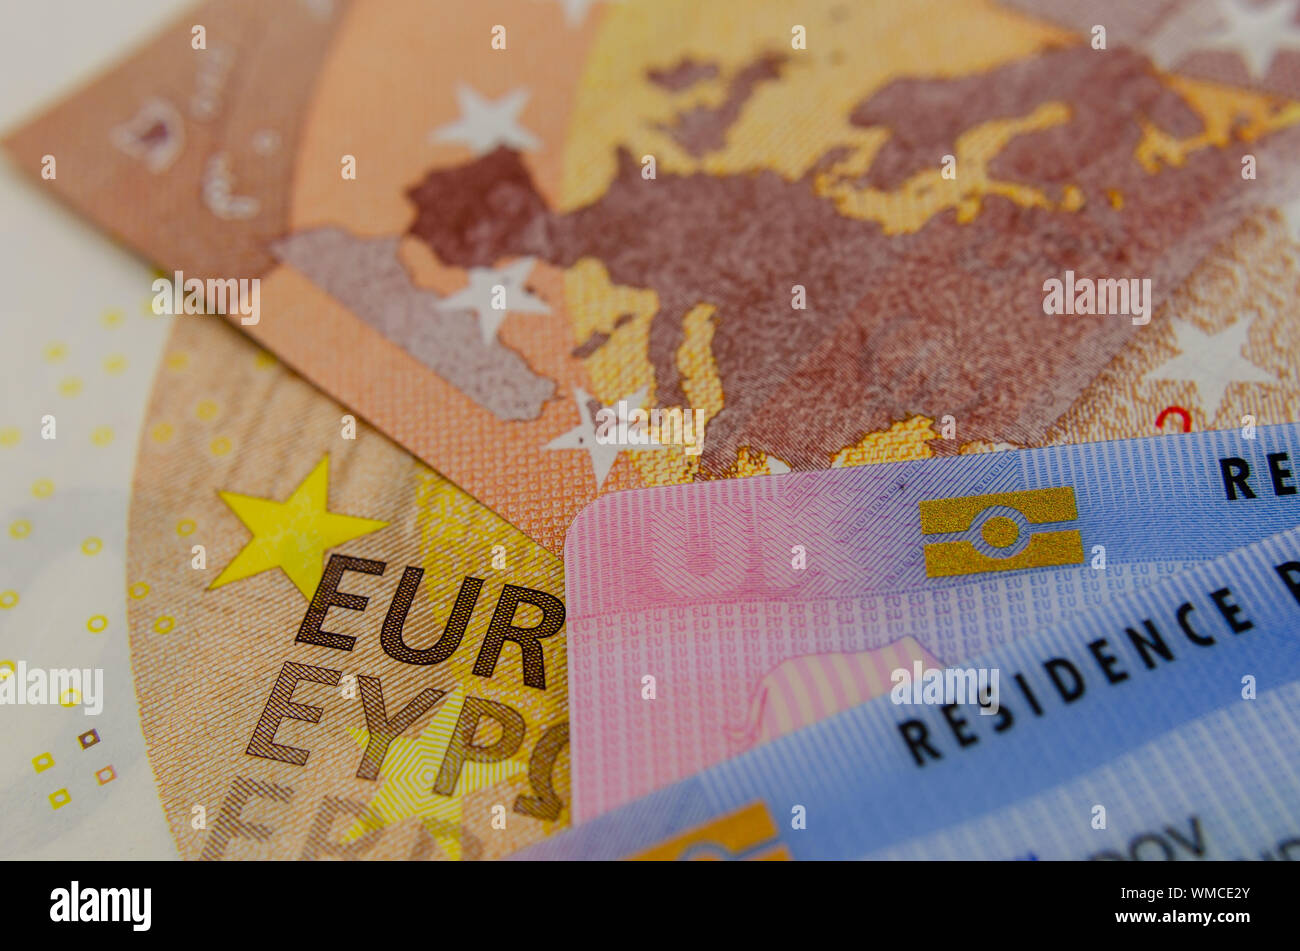 UK biometrischen Aufenthaltstitels Karten und eine Karte der EU auf der Banknote. Konzept Foto für Einwanderung. Stockfoto